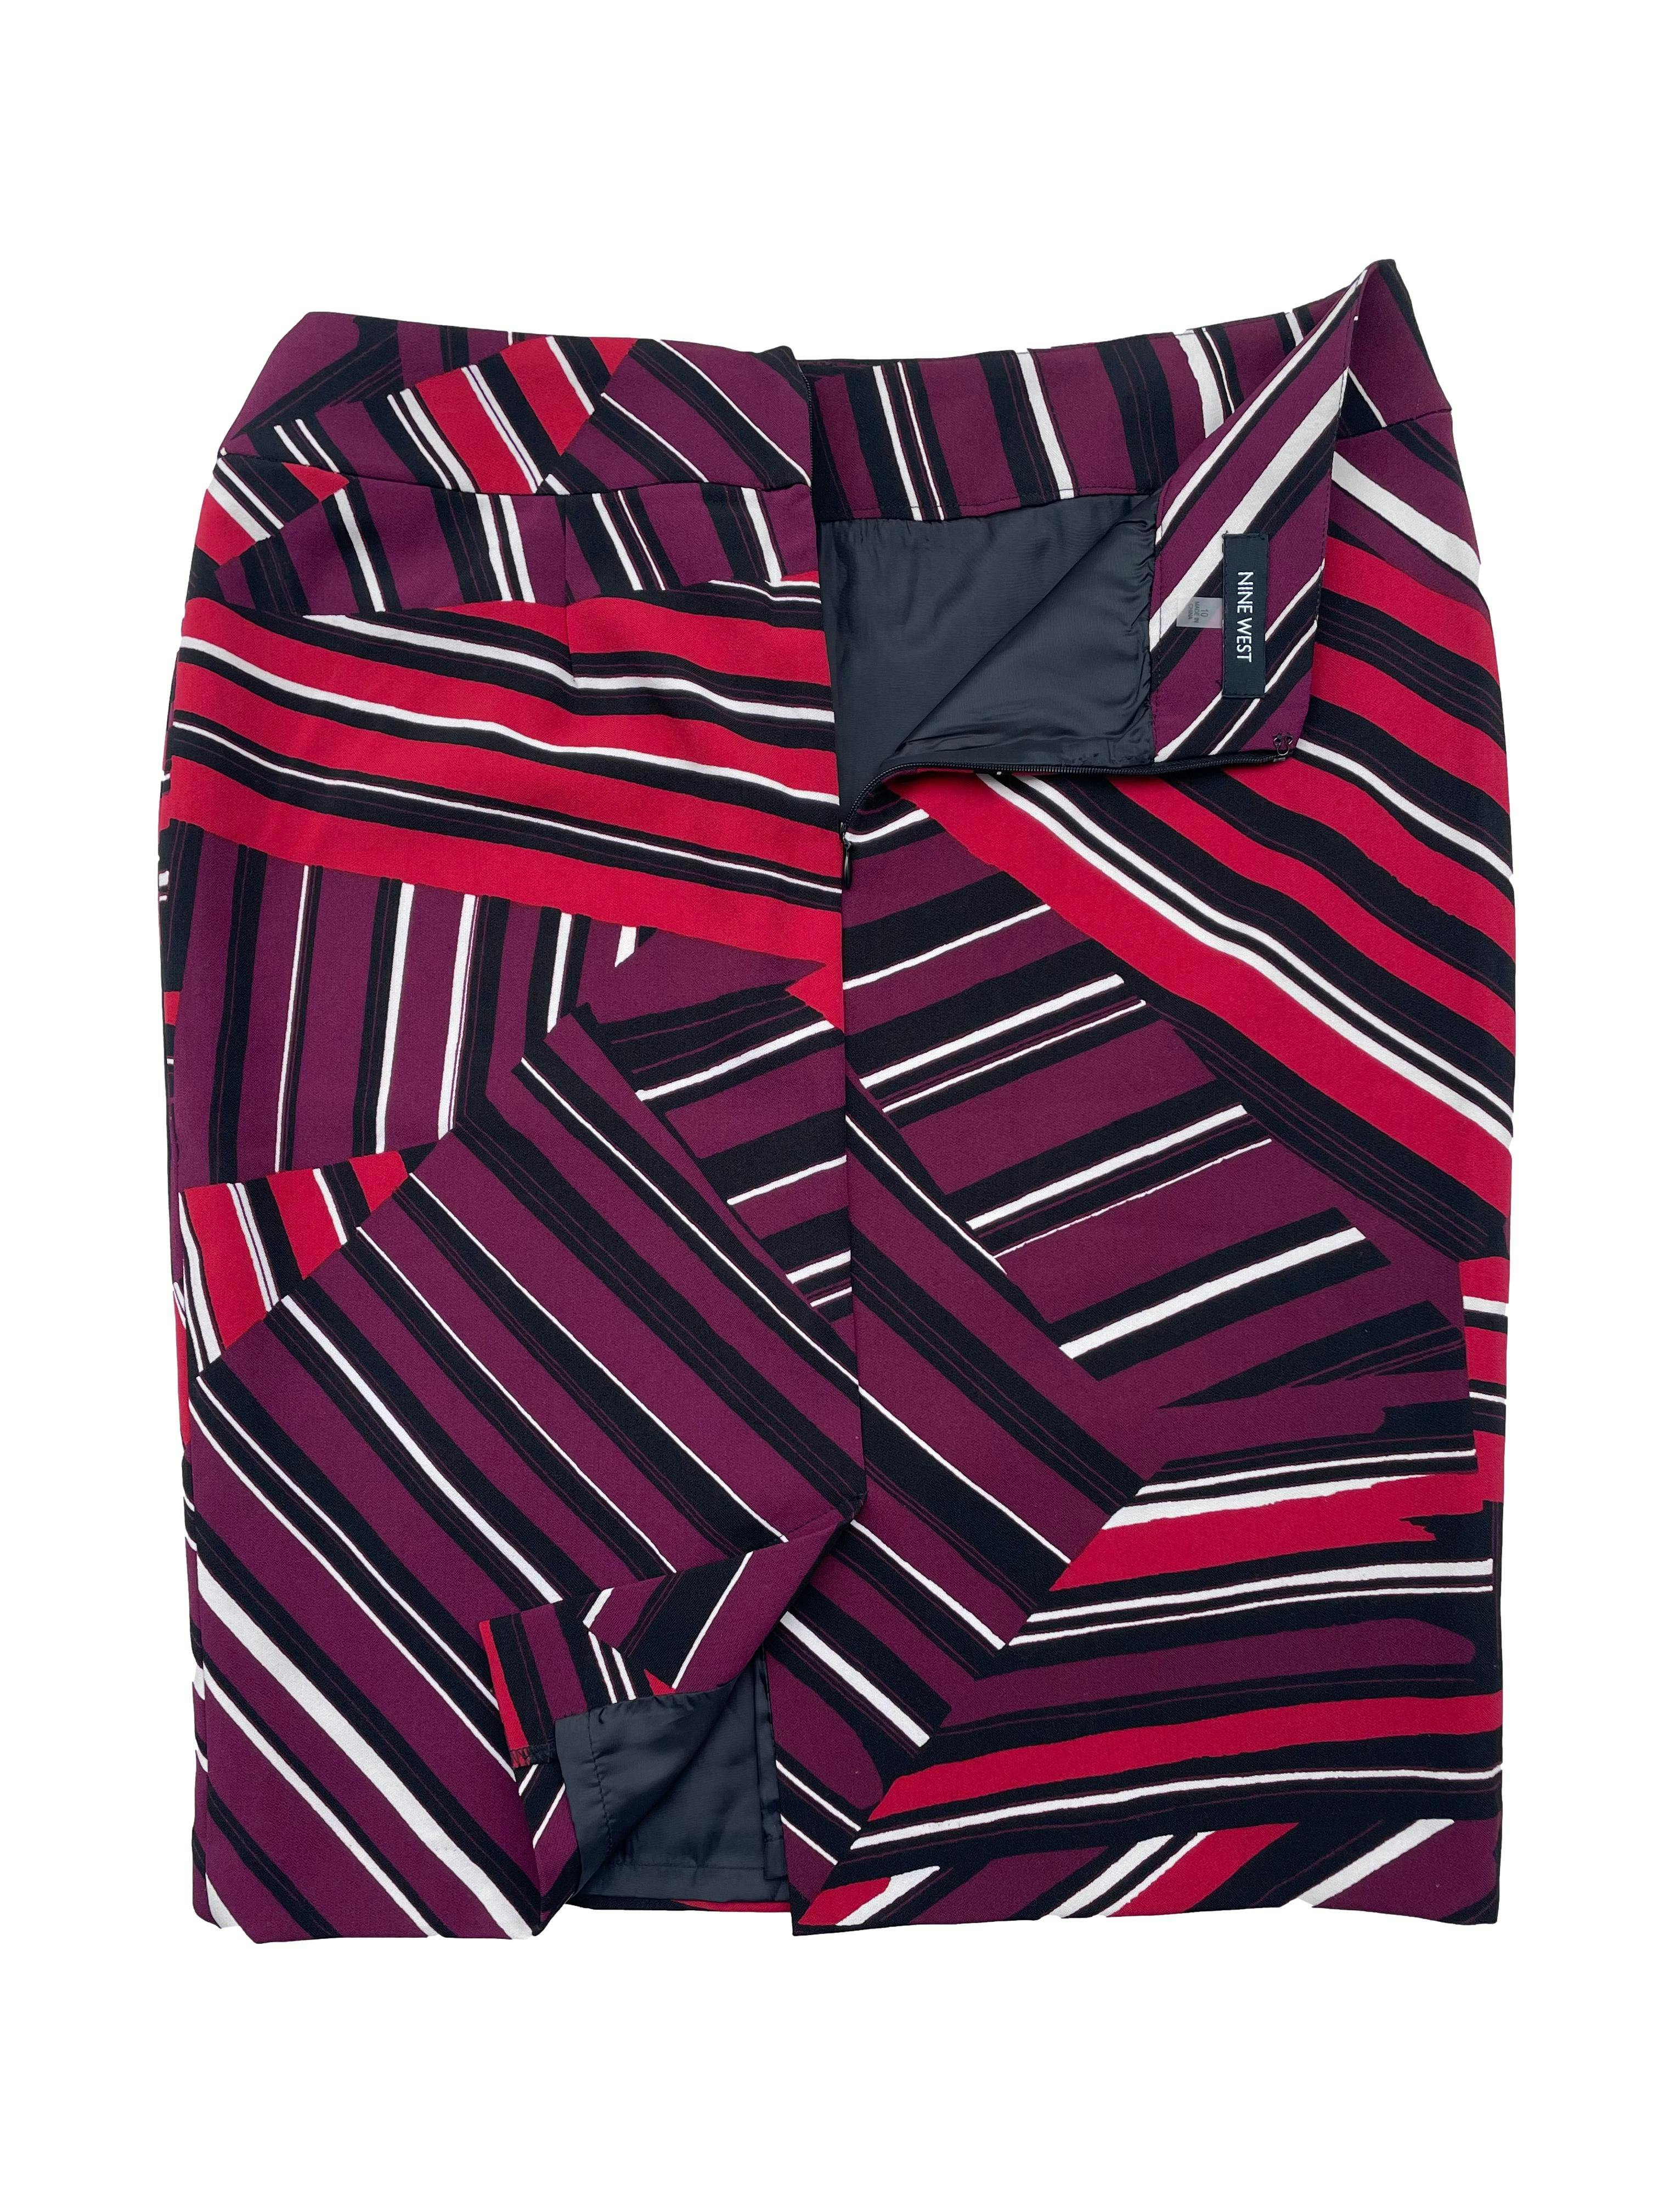 Falda Nine West a rayas negras, rojas, guindas y blancas, cierre posterior y forro interno. Cintura: 80cm Cadera 105 Largo: 58cm